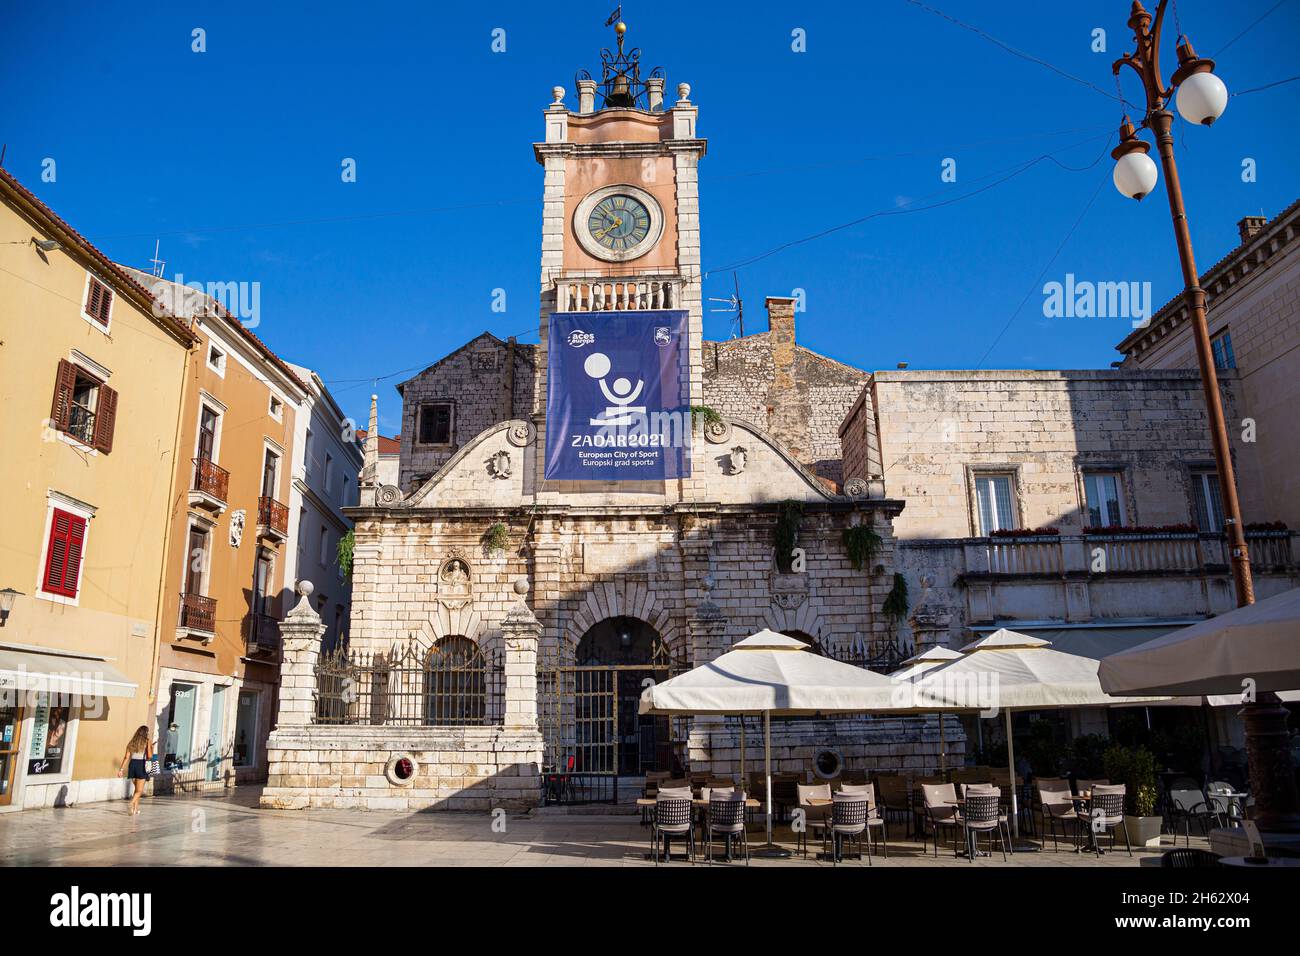 place nationale (narodni trg square) avec des informations touristiques dans la ville de marbre zadar, destination touristique populaire en croatie, europe Banque D'Images